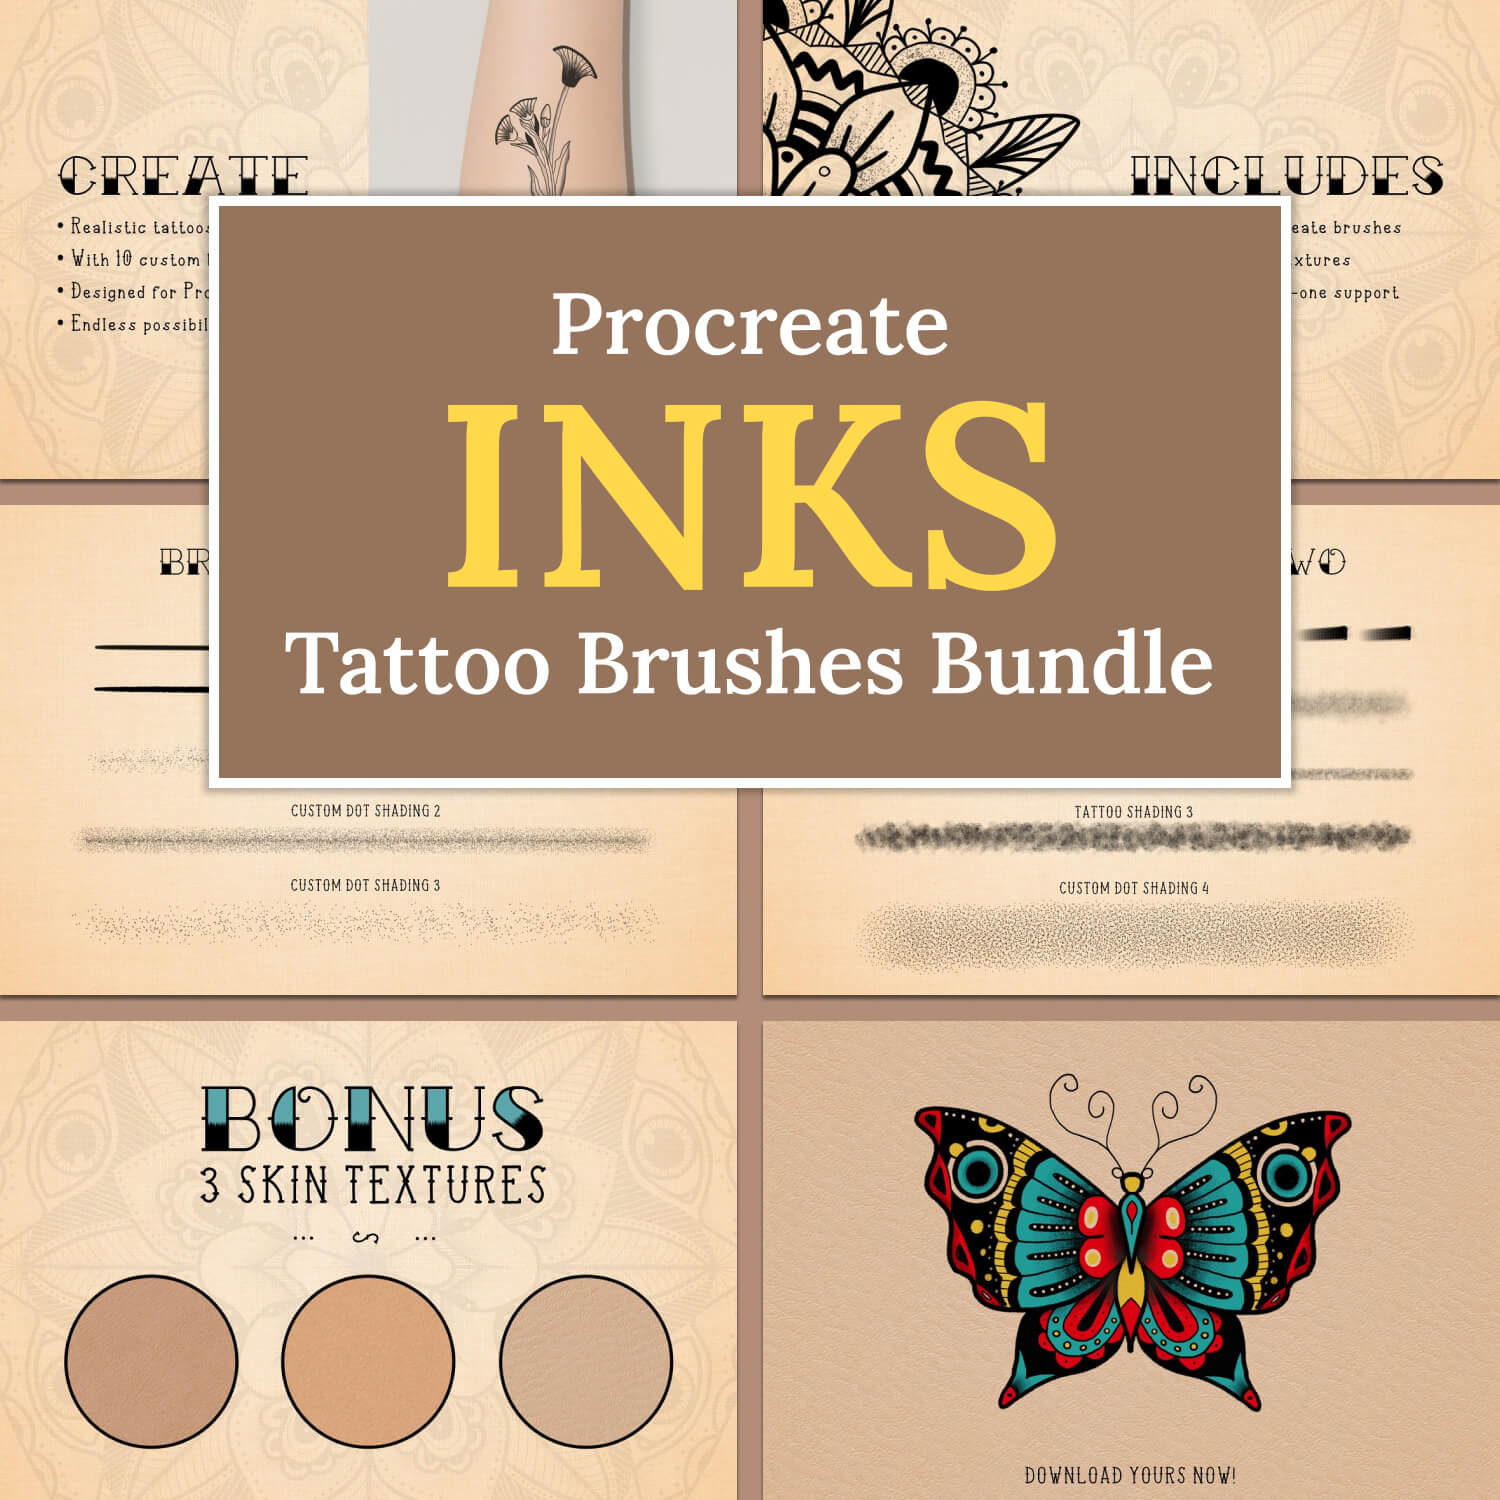 Procreate inks tattoo brushes bundle.